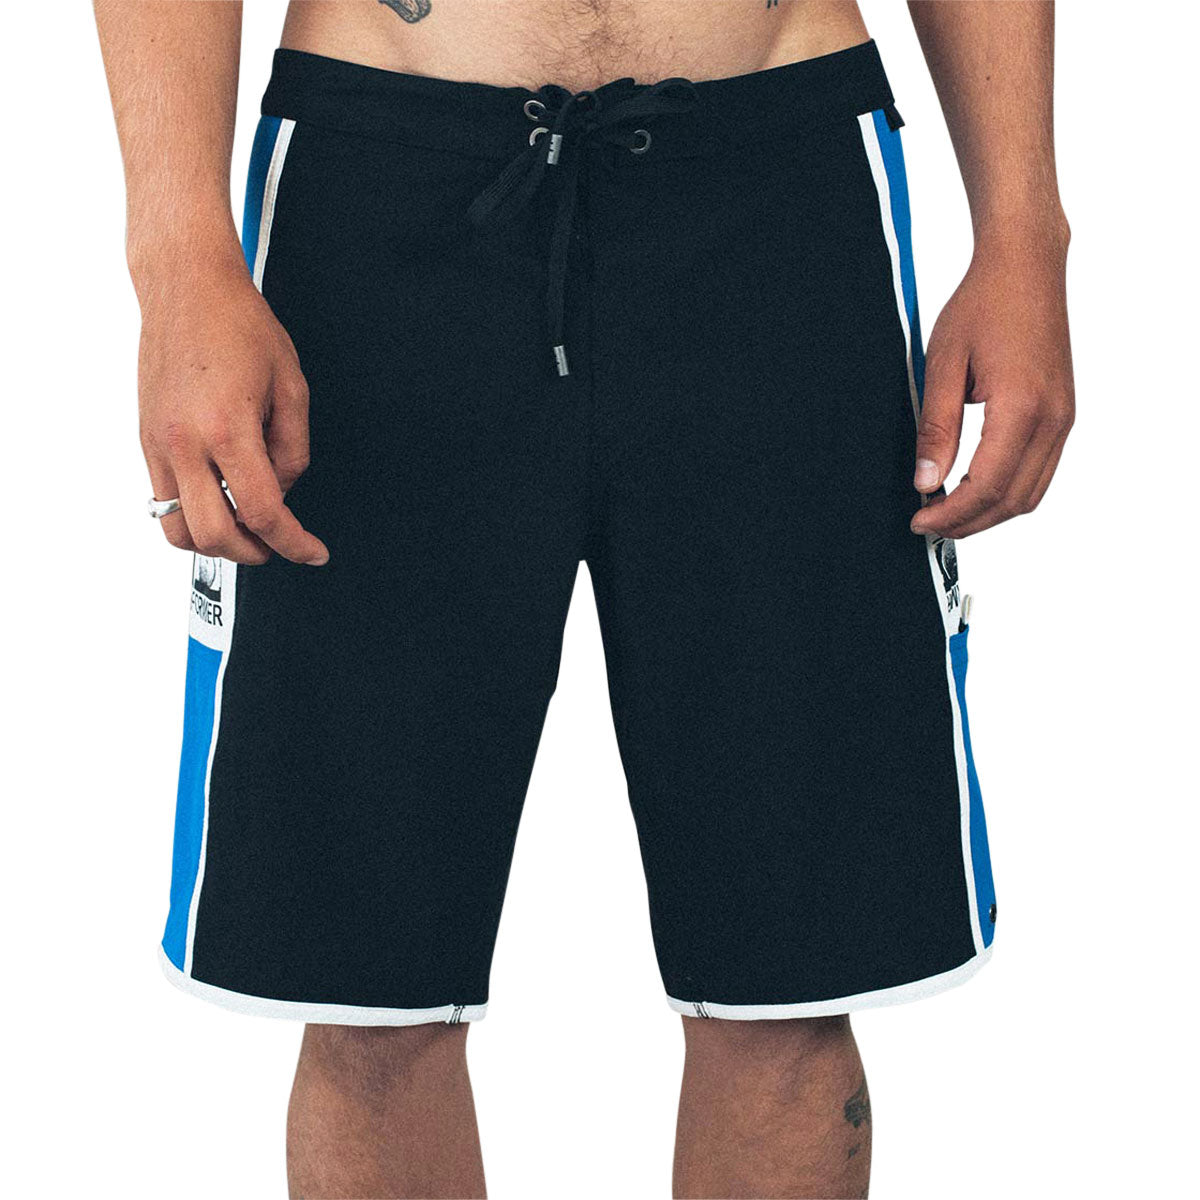 Former Manners 20 Shorts - Black Cobalt image 2